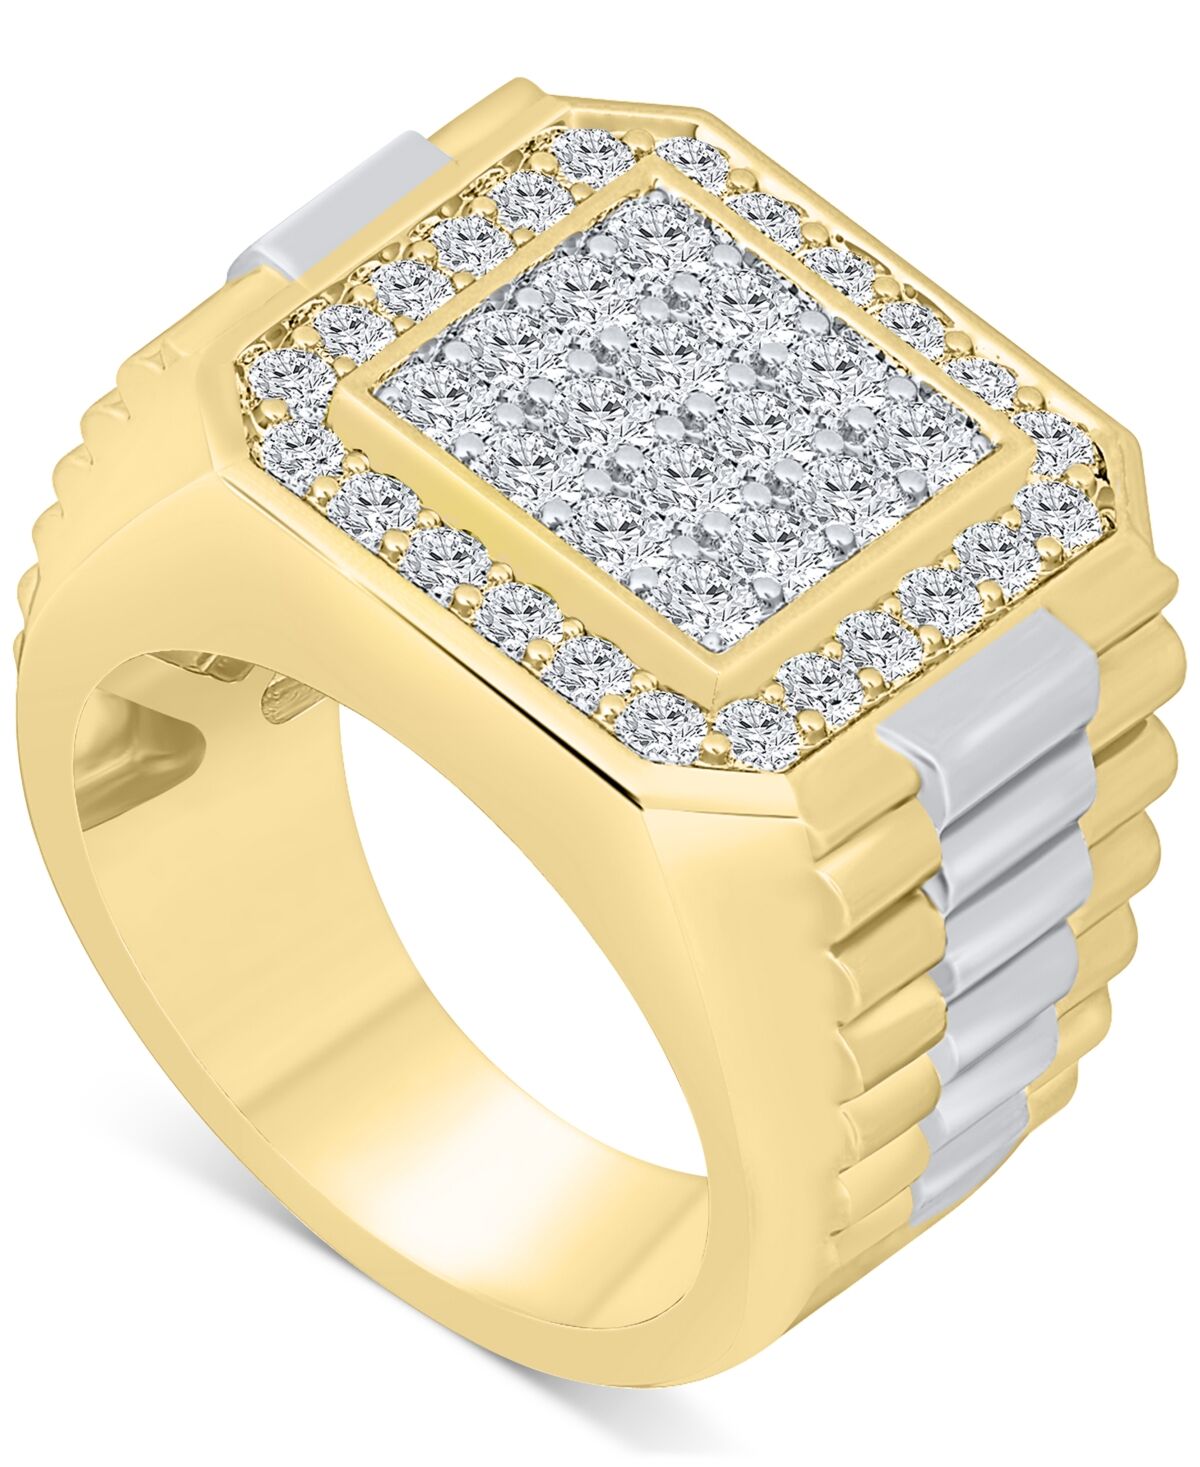 Macy's Men's Diamond Cluster Ring (2 ct. t.w.) in 10k Gold - Gold